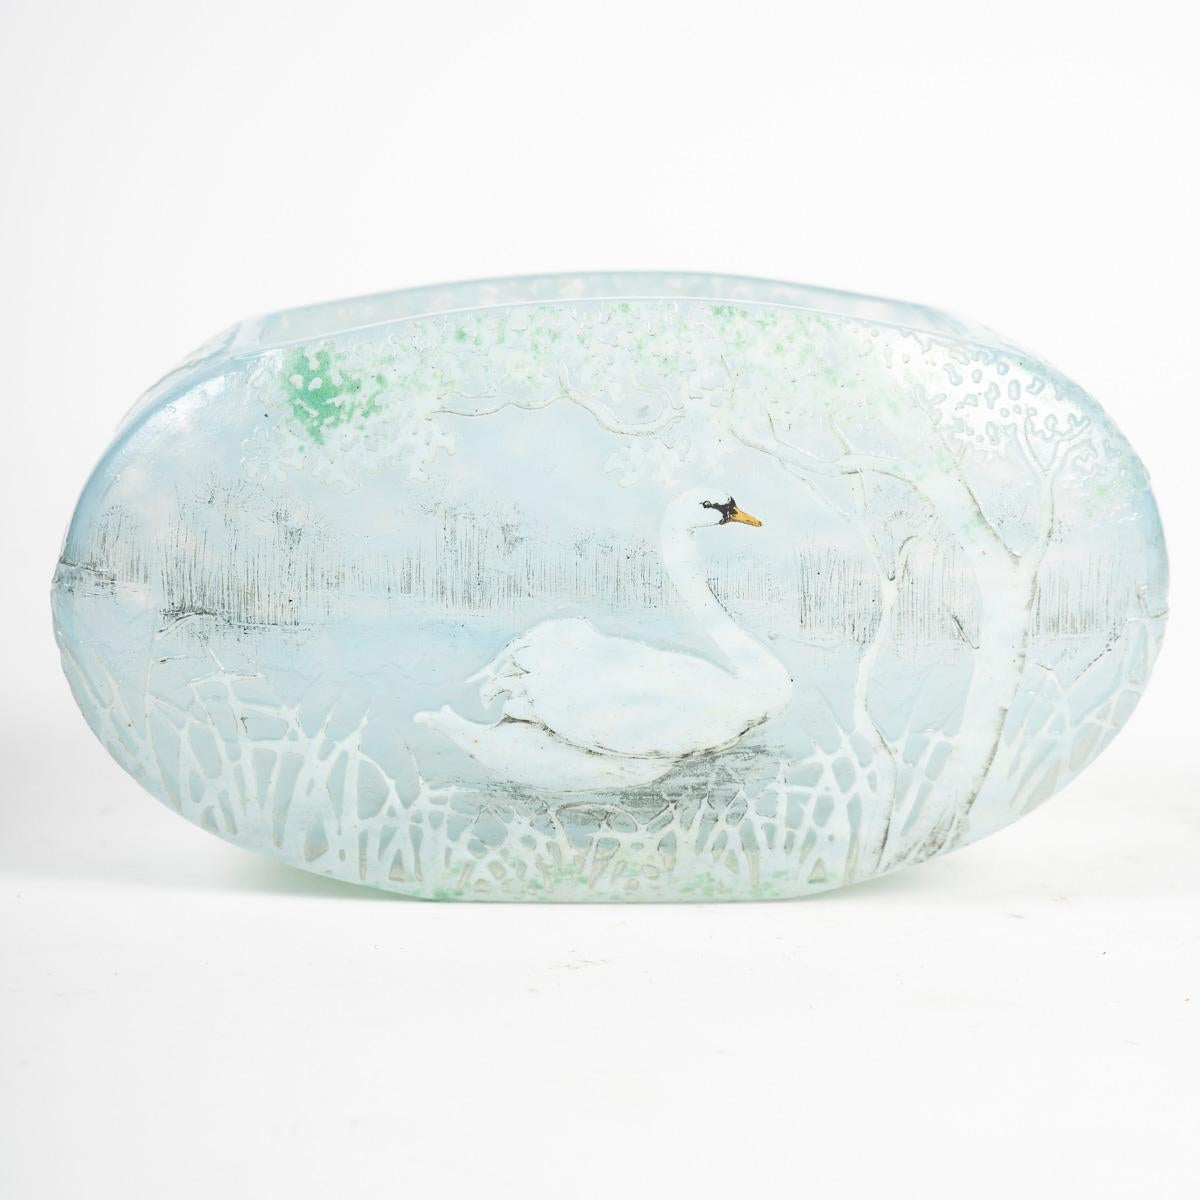 French Daum Nancy - Rare Jardinière-shaped Vase With Swan Decor, Art Nouveau Glass For Sale